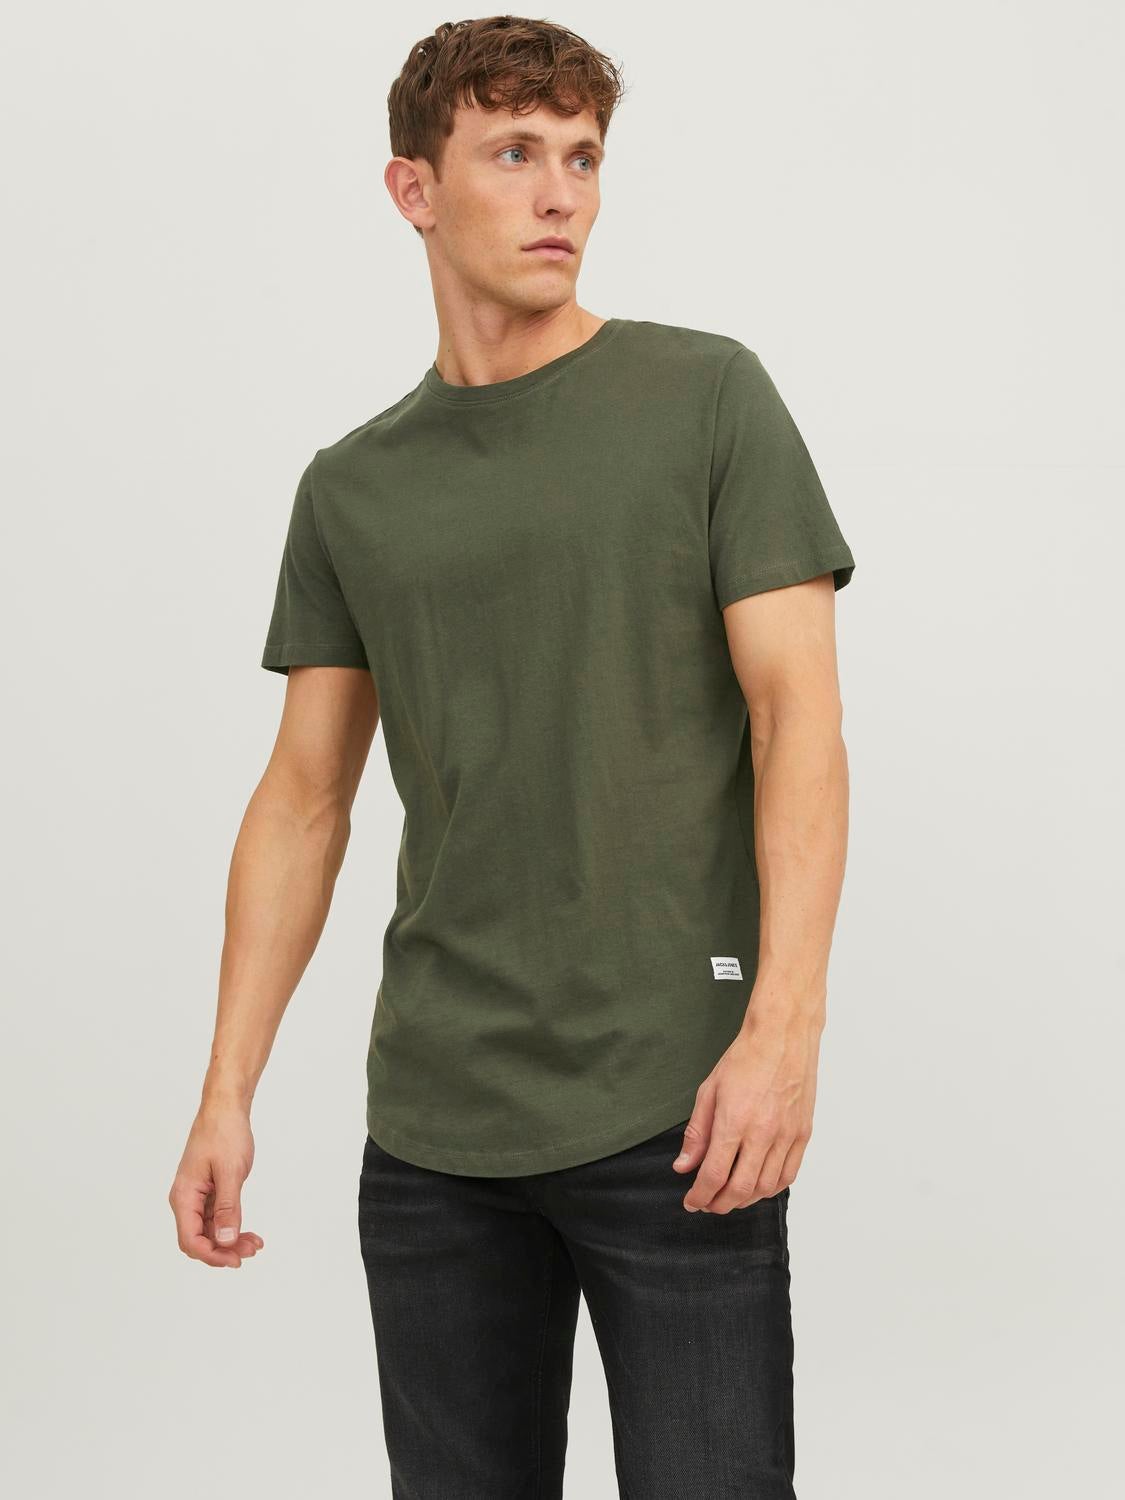 Grün L Jack & Jones T-Shirt Rabatt 56 % HERREN Hemden & T-Shirts Basisch 